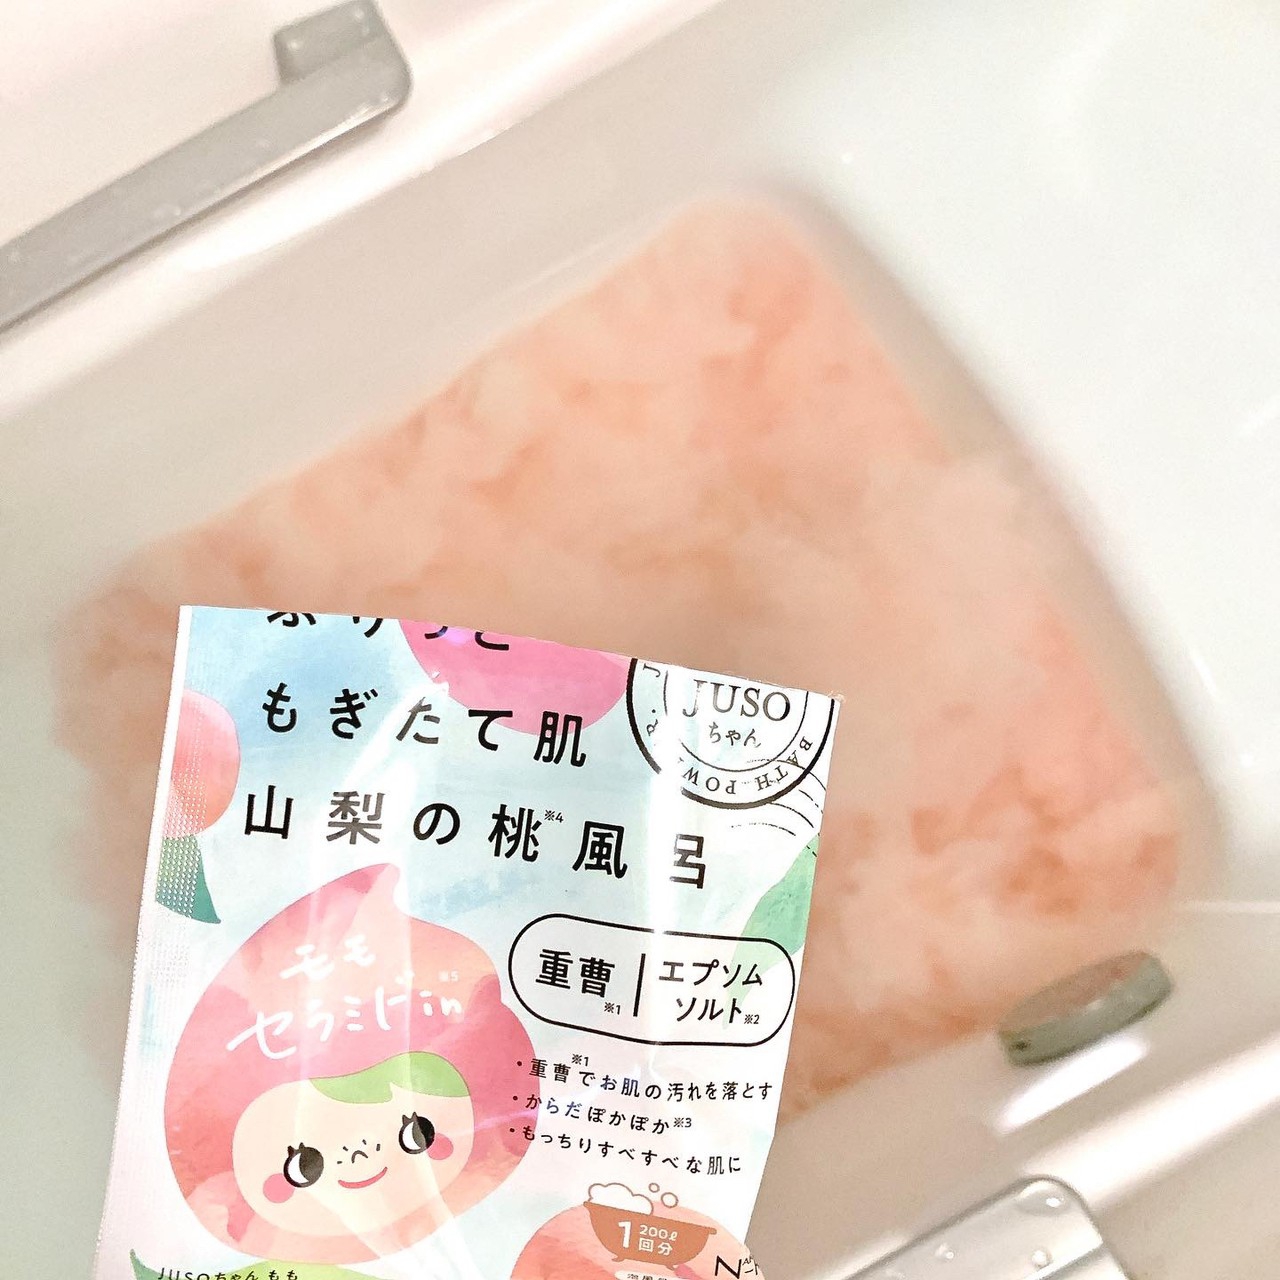 NAKUNARE JUSO BATH POWDER（桃）を使ったkana_cafe_timeさんのクチコミ画像4